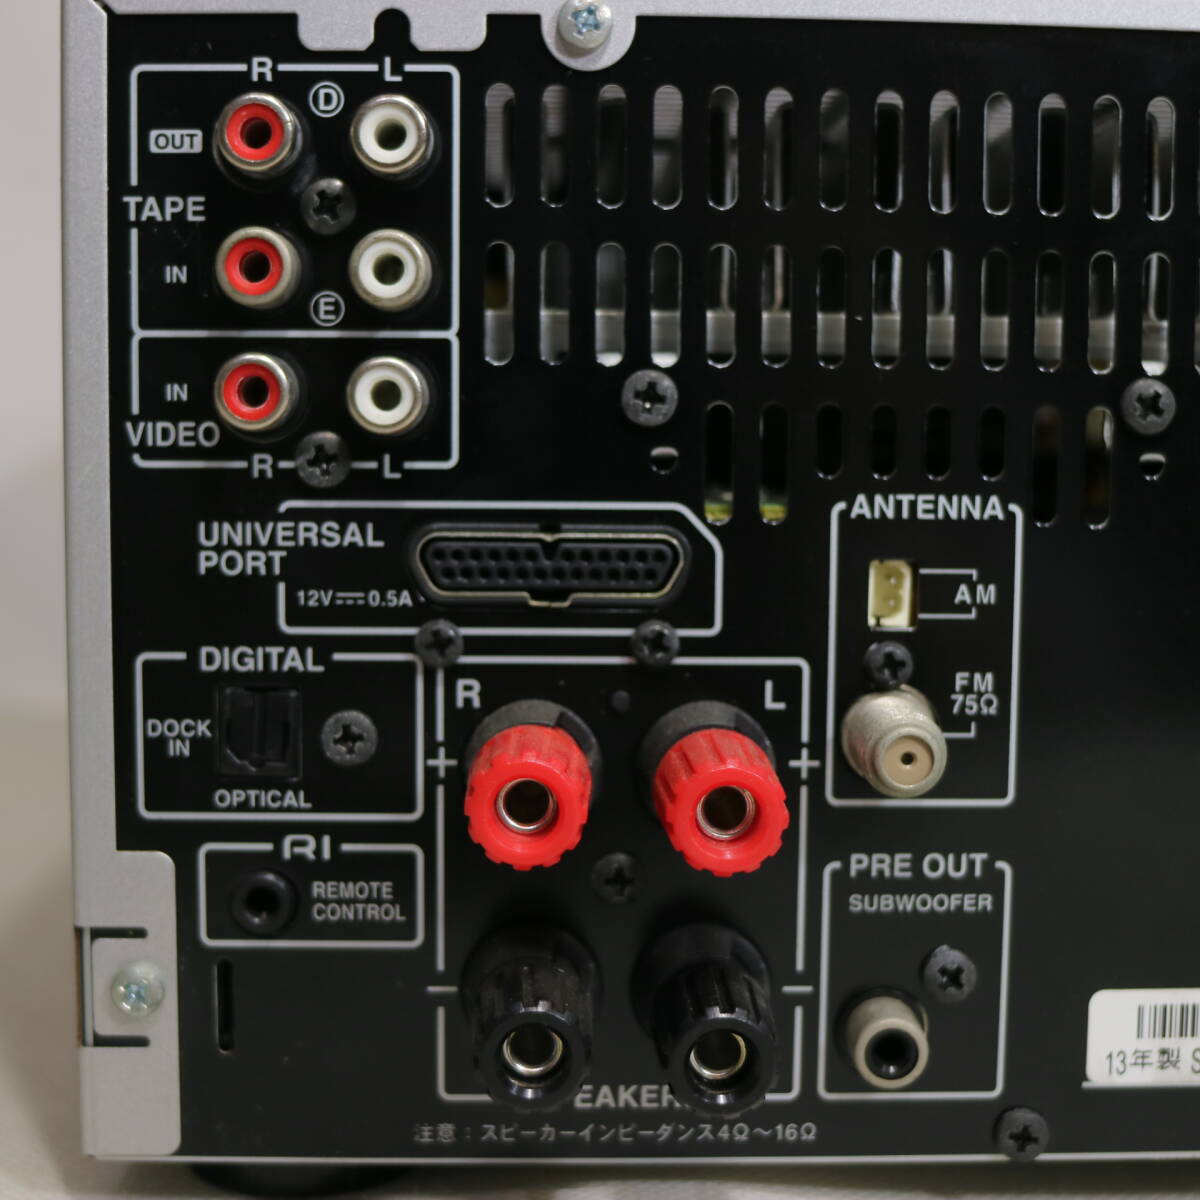  электризация подтверждено 2013 год производства ONKYO FR-N9NX CD MD USB MD тюнер усилитель проигрыватель мини компонент винтового типа динамик терминал Onkyo б/у 